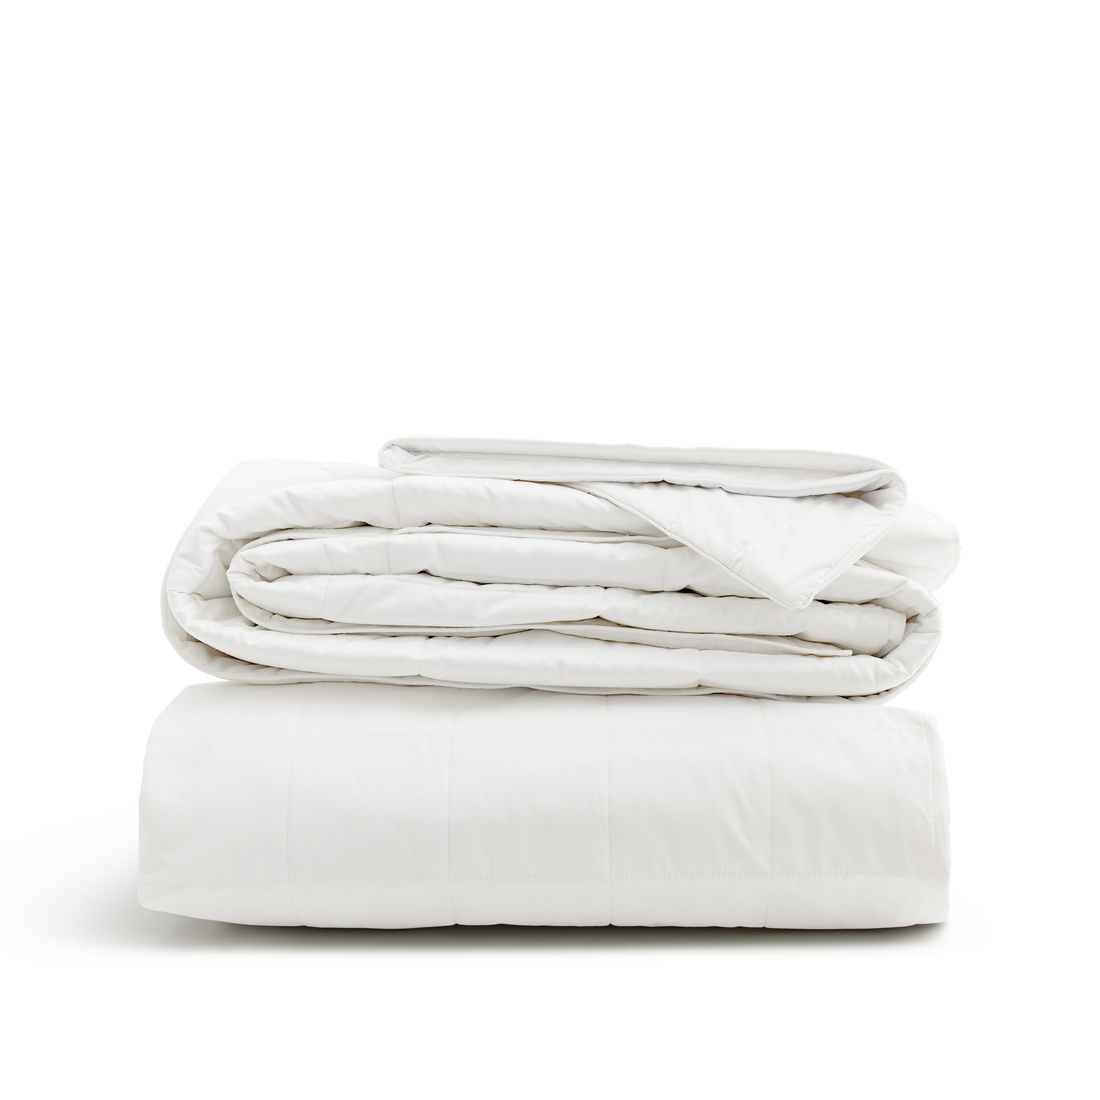 Down alternative bedding bundle in white by SmartSilk